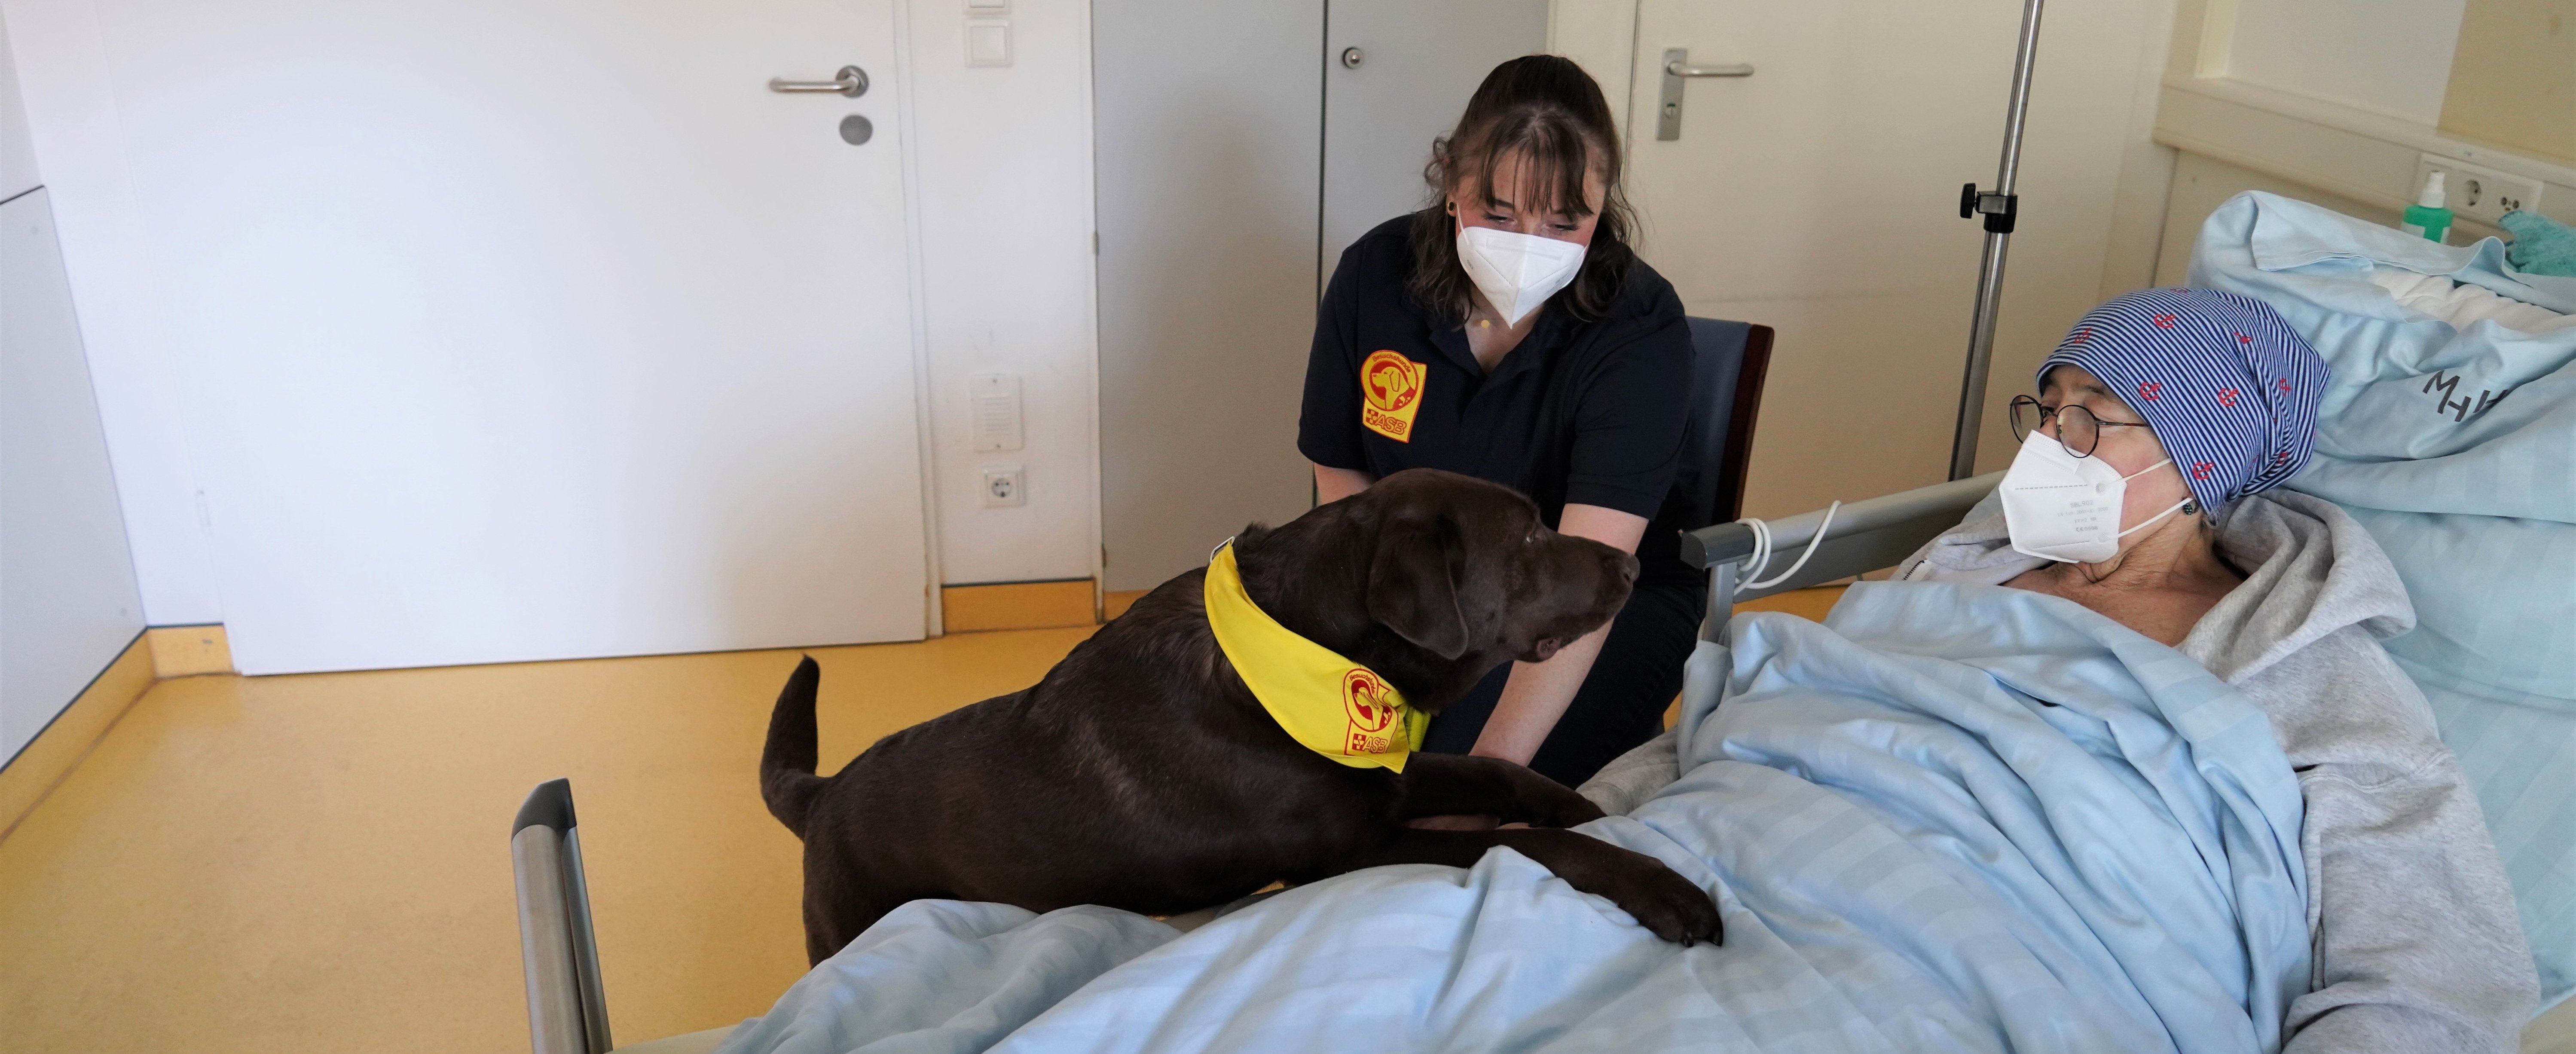 Madita Krauße sitzt mit ihrem Hund am Bett einer Palliativpatientin. Der Hund hat die Vorderpfoten auf dem Bett.